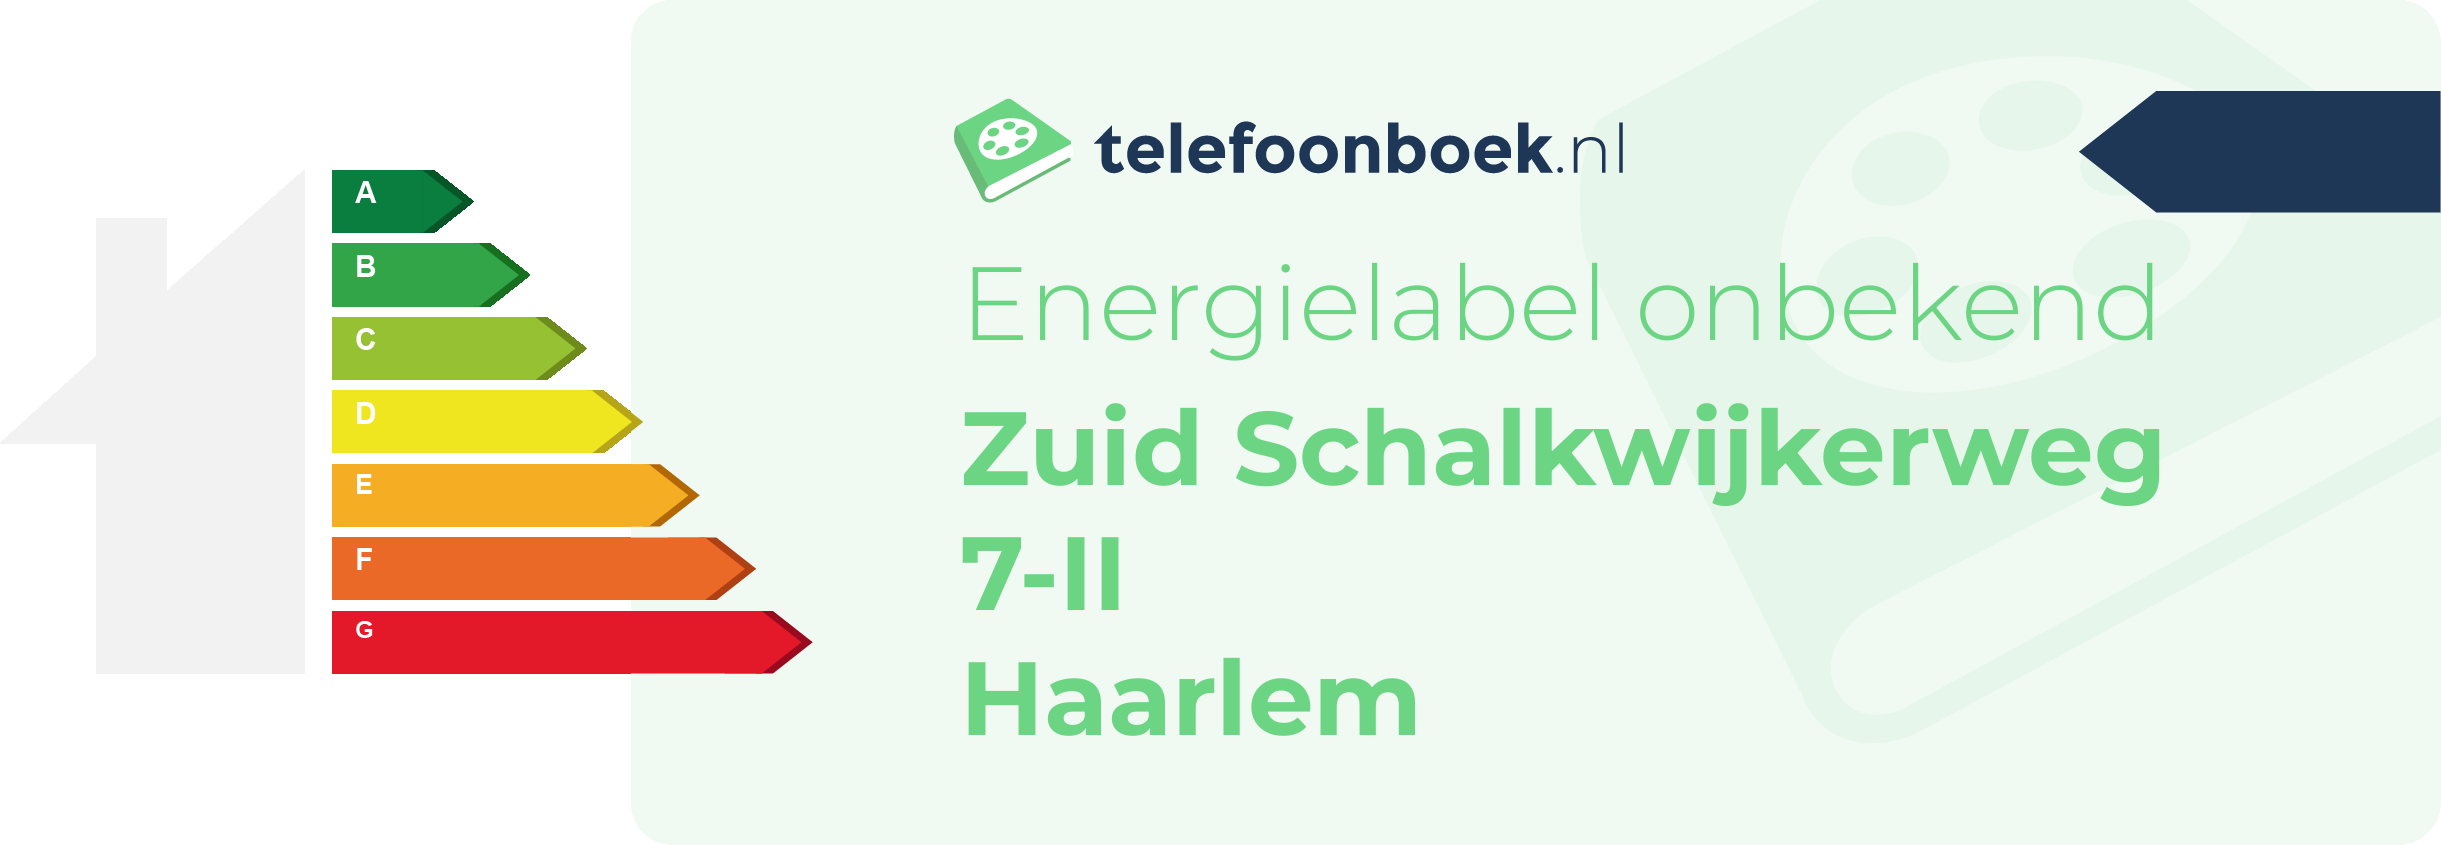 Energielabel Zuid Schalkwijkerweg 7-II Haarlem